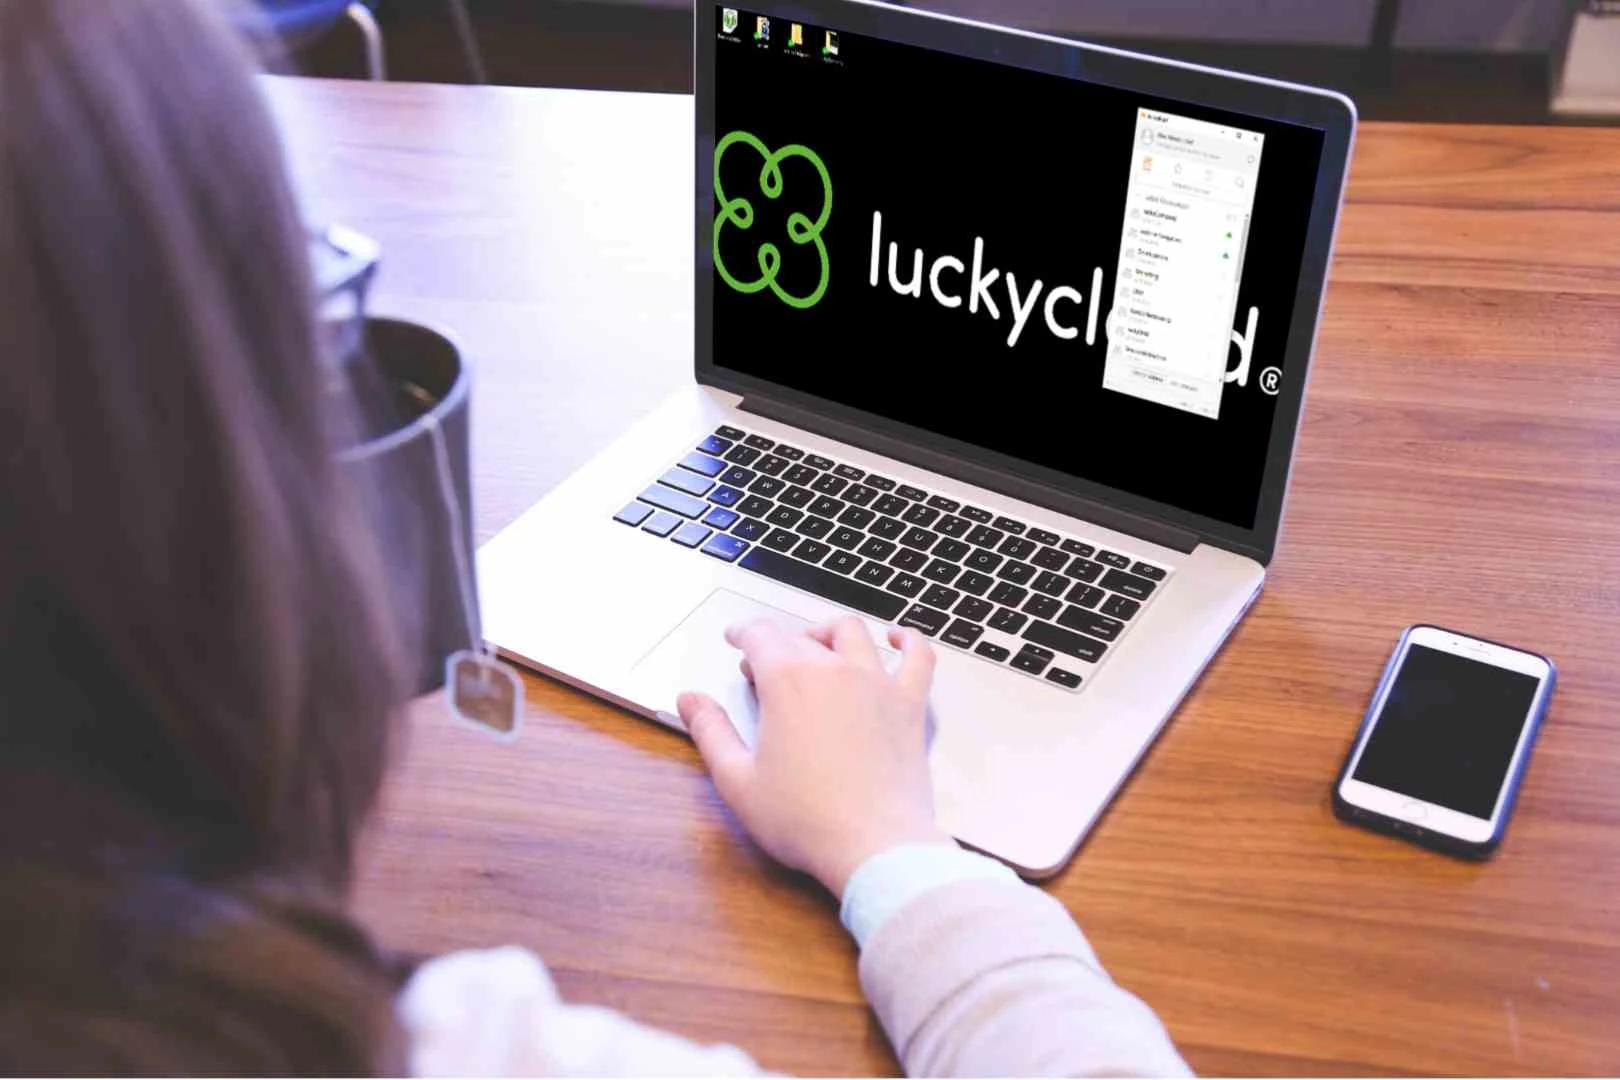 Vogelperspektive ueber die Schultern einer Frau. Auf dem Bildschirm eines Laptops ist das luckycloud-Logo zu sehen.